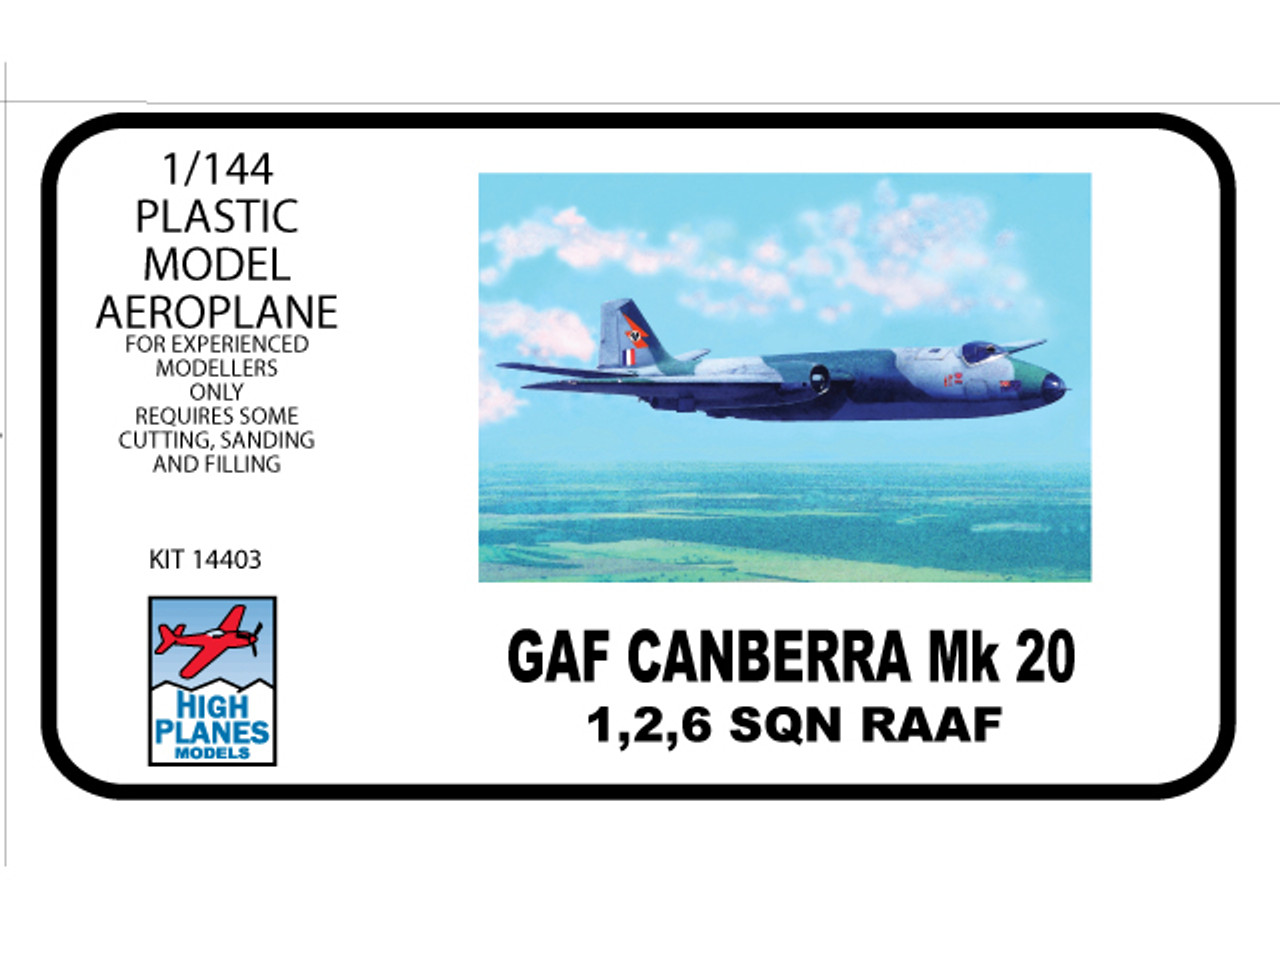 High Planes Models GAF Canberra Mk20